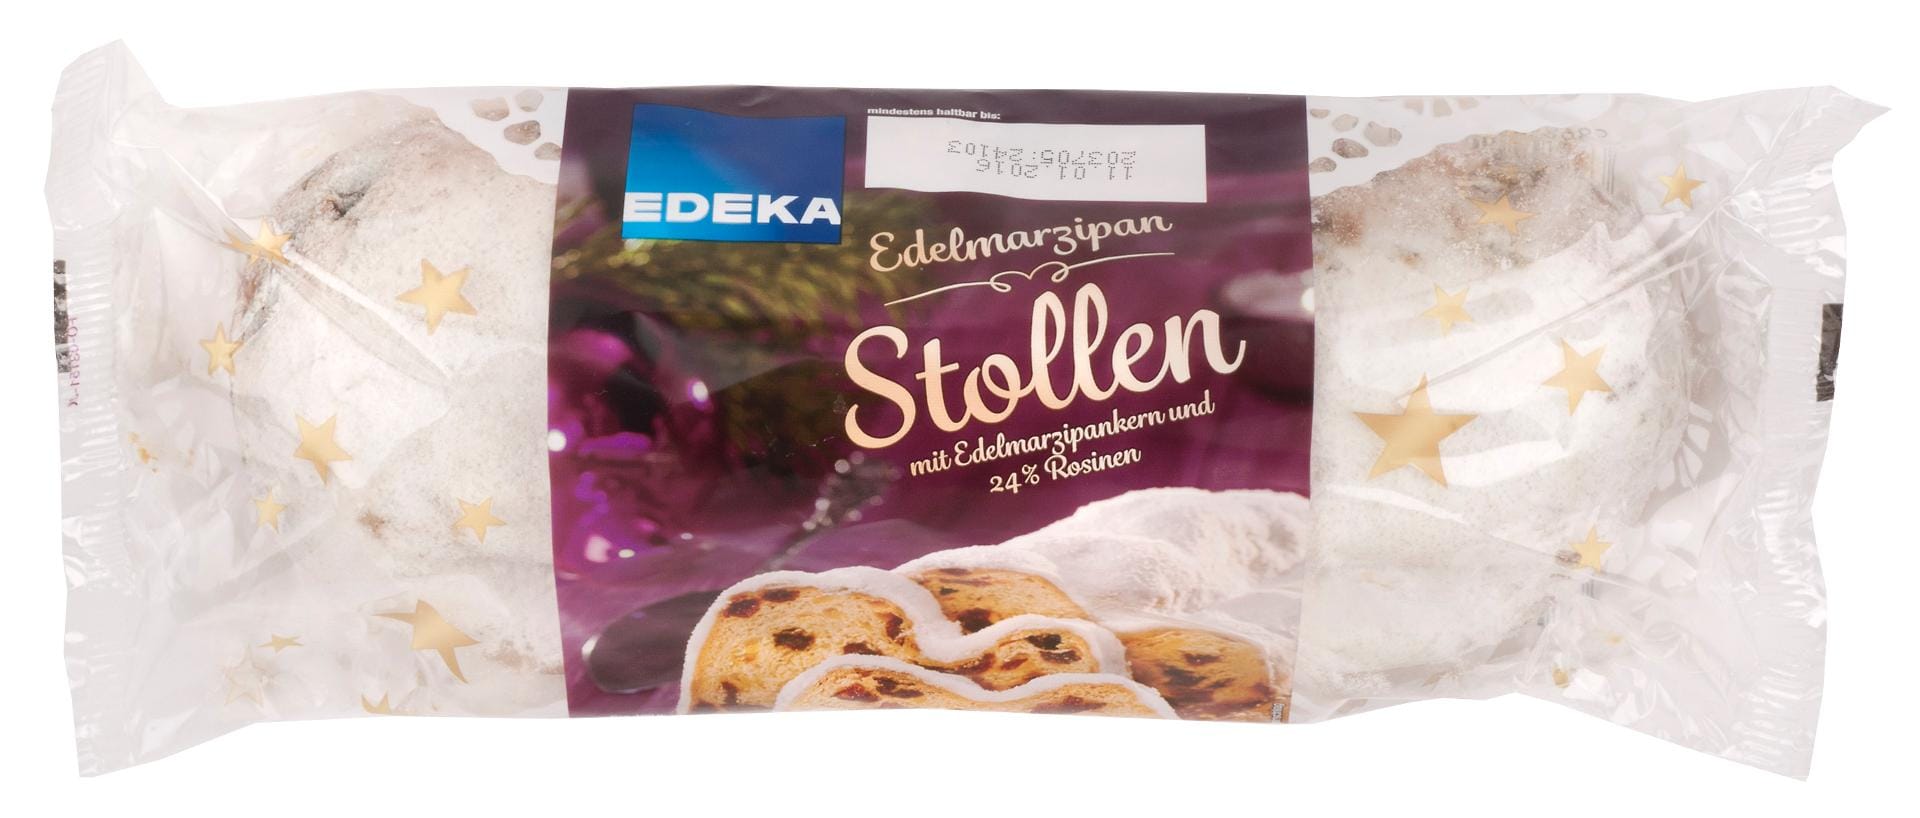 Wesentlich günstiger (5 Euro pro Kilogramm) ist der "Edelmarzipan Stollen" von Edeka. In Qualität und Geschmack konnte er die Tester überzeugen und erhielt dafür die Note "Gut" (2,4).